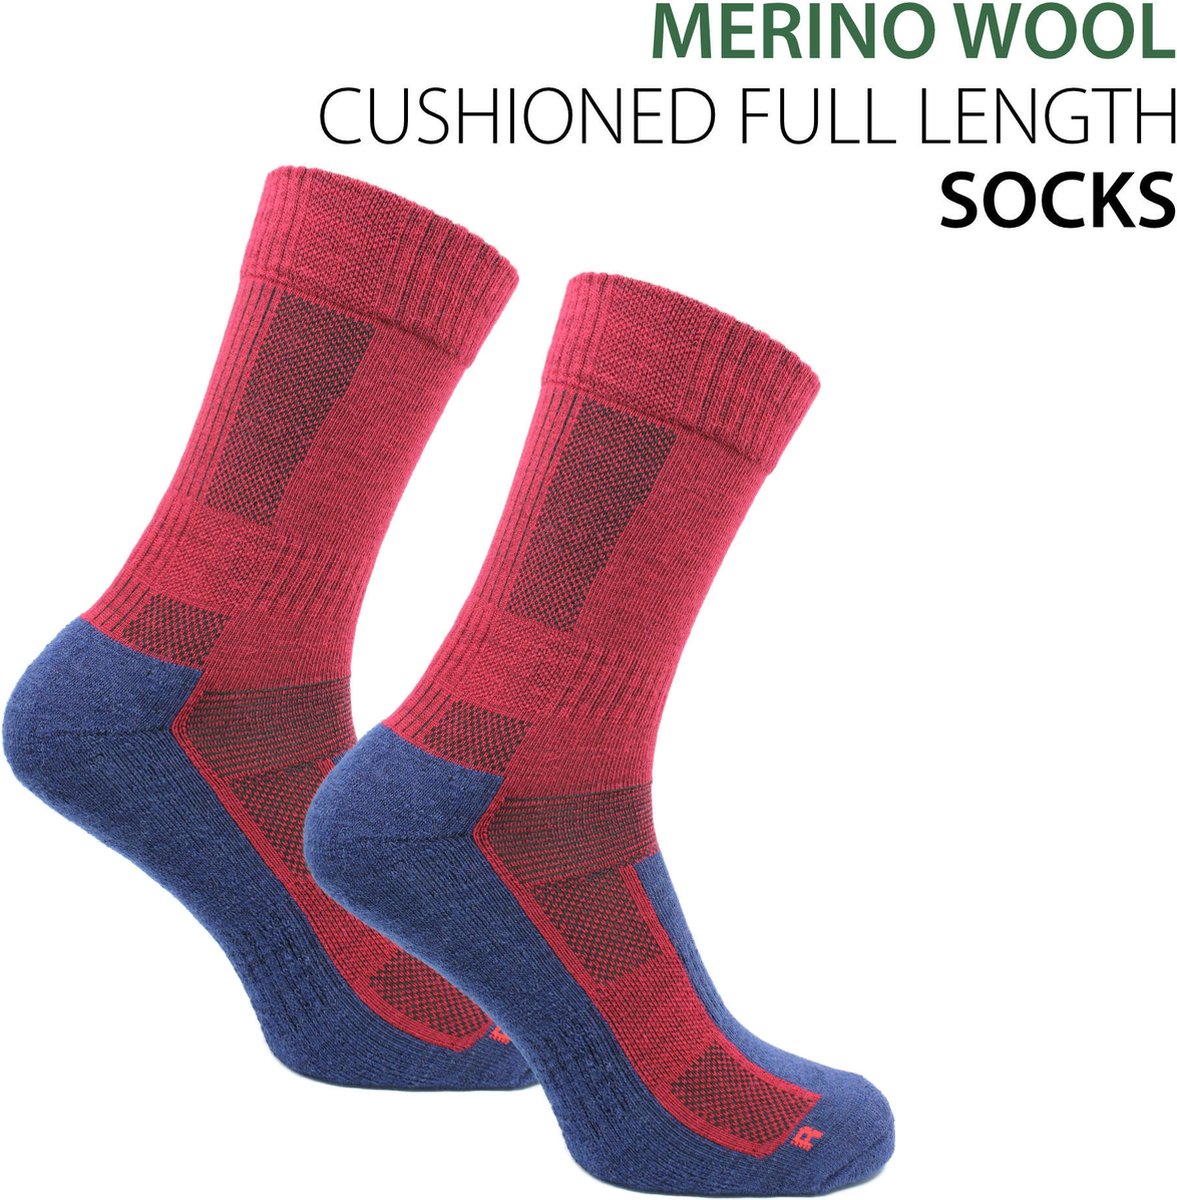 Norfolk - Wandelsokken - 2 Paar - 60% Merino wollen Sokken met Demping - Leonardo - Rood-Blauw - Maat 35-38